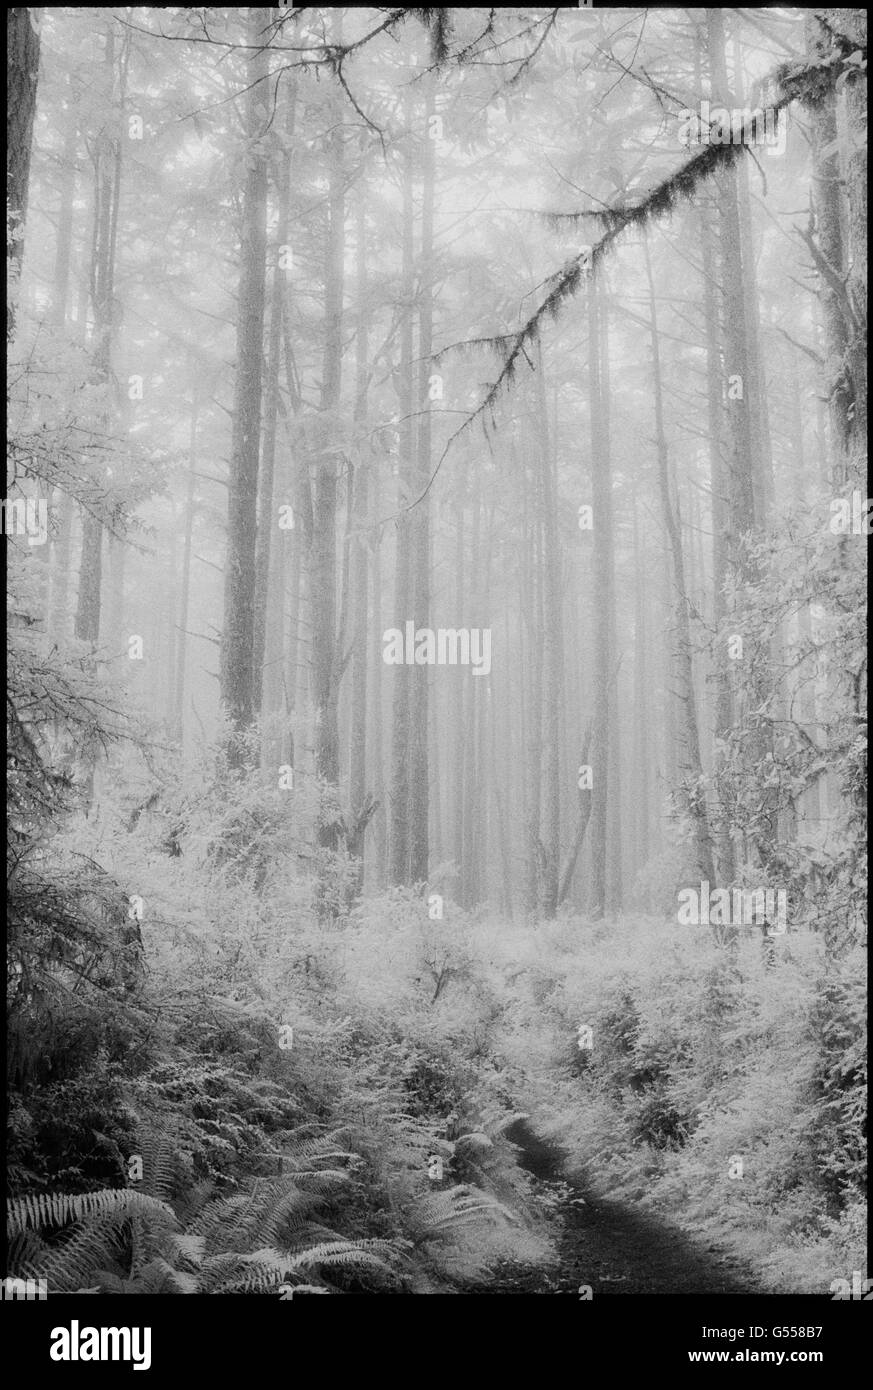 Sentiero attraverso le felci e douglas fir forest (Pseudotsuga menziesii) in caso di nebbia, 'Old Pine Trail", Point Reyes National Seashore, Mari Foto Stock